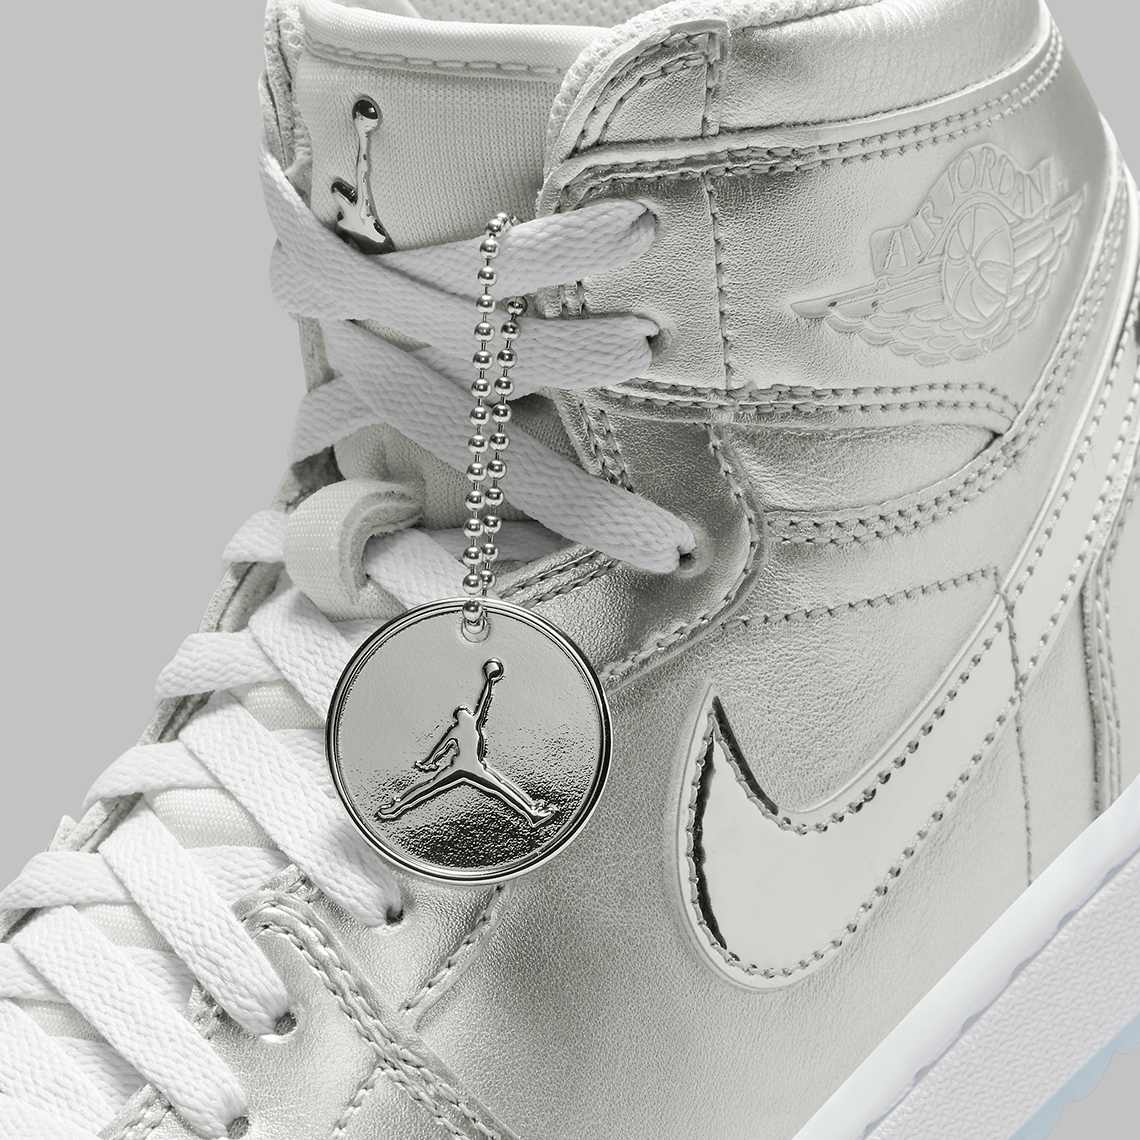 Air Jordan XXXIV Zapatillas de baloncesto Niño a Blanco Metallic Silver Chrome Gift Giving Fd6815 001 12